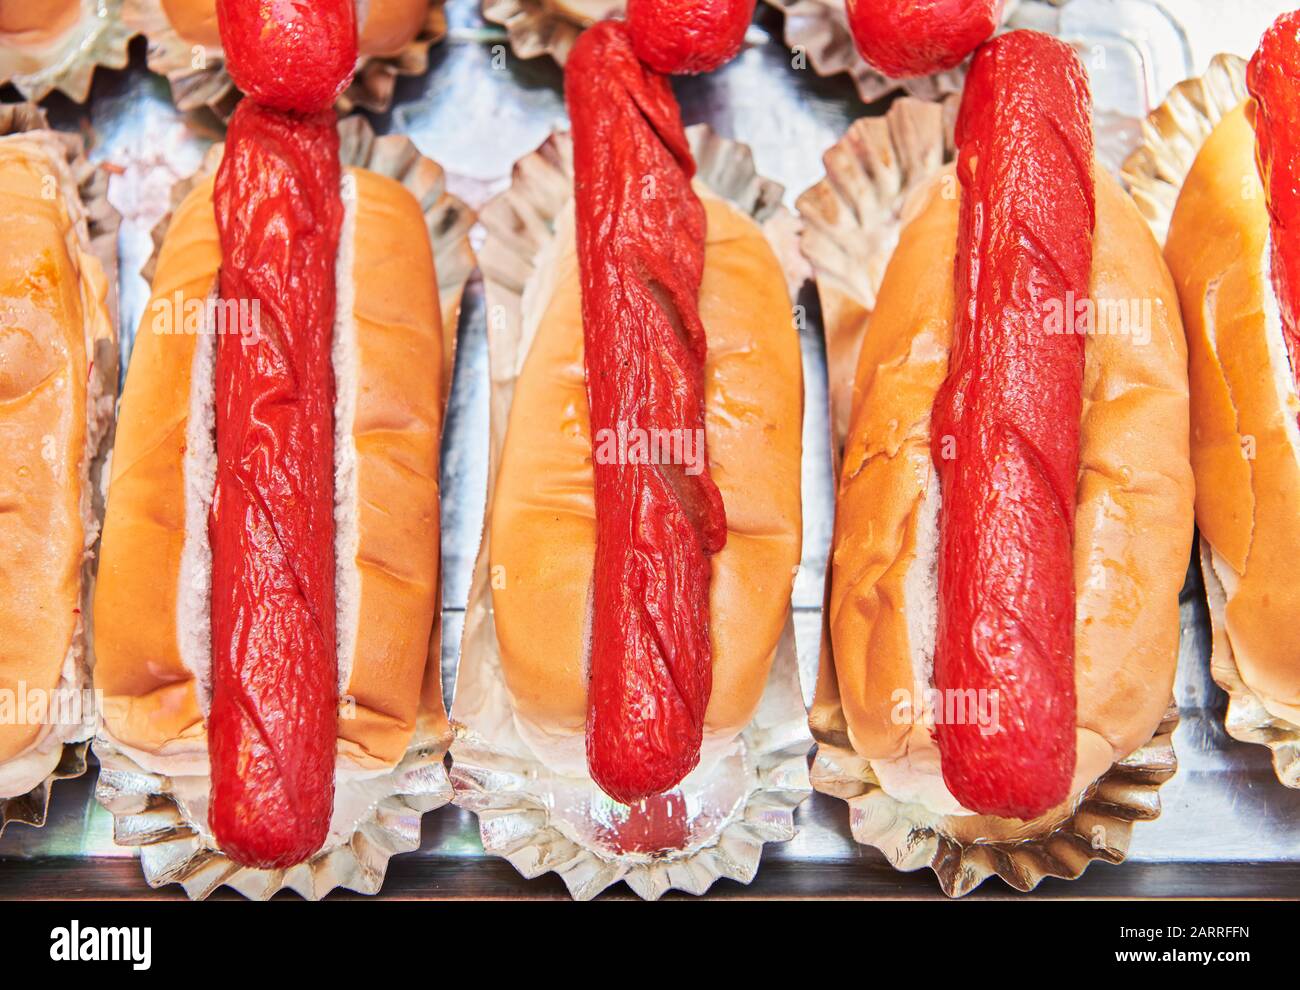 Cani caldi preparati avvolti in un pane dolce, pronto per la vendita in uno stand alimentare durante un fiesta.Tipica malsana cibo di strada a buon mercato nelle Filippine Foto Stock